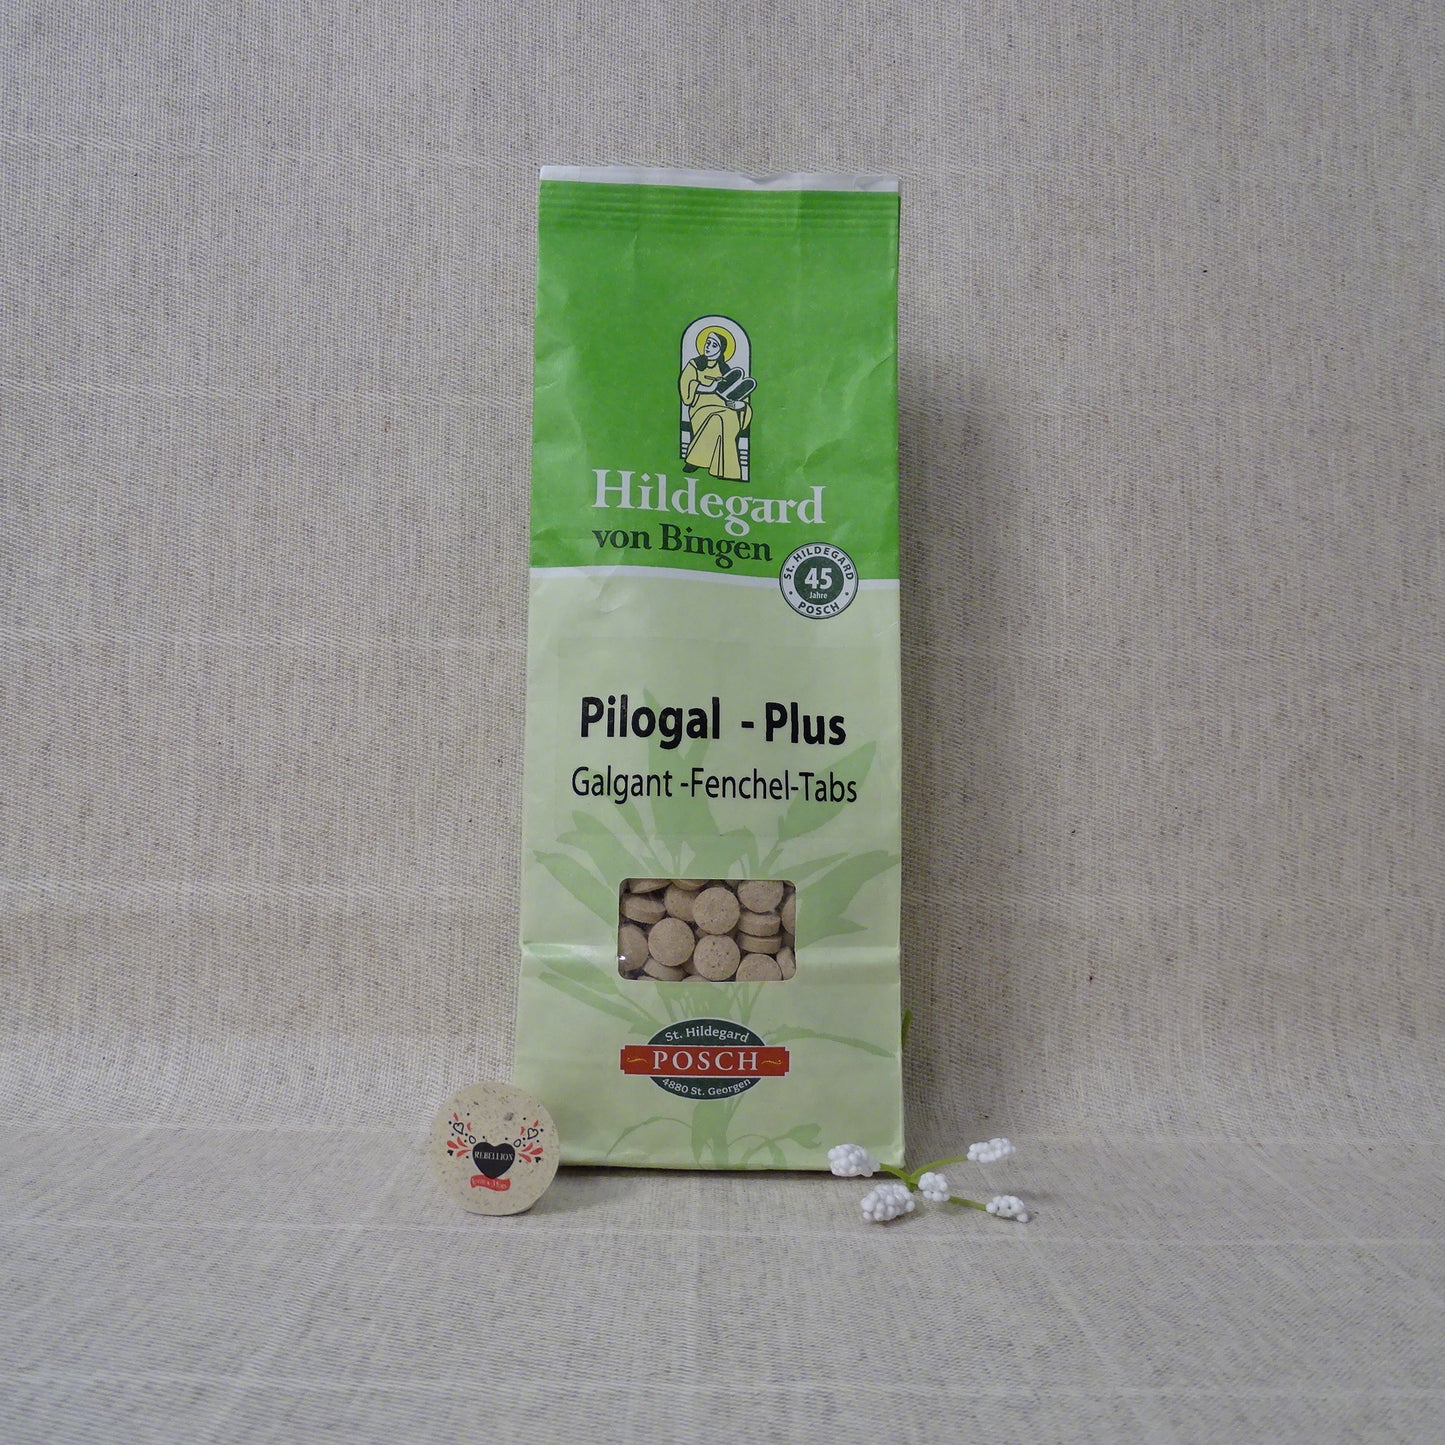 Pilogal Plus® Galgant-Fenchel-Tabs St.Hildegard Posch 25g Taschenbox